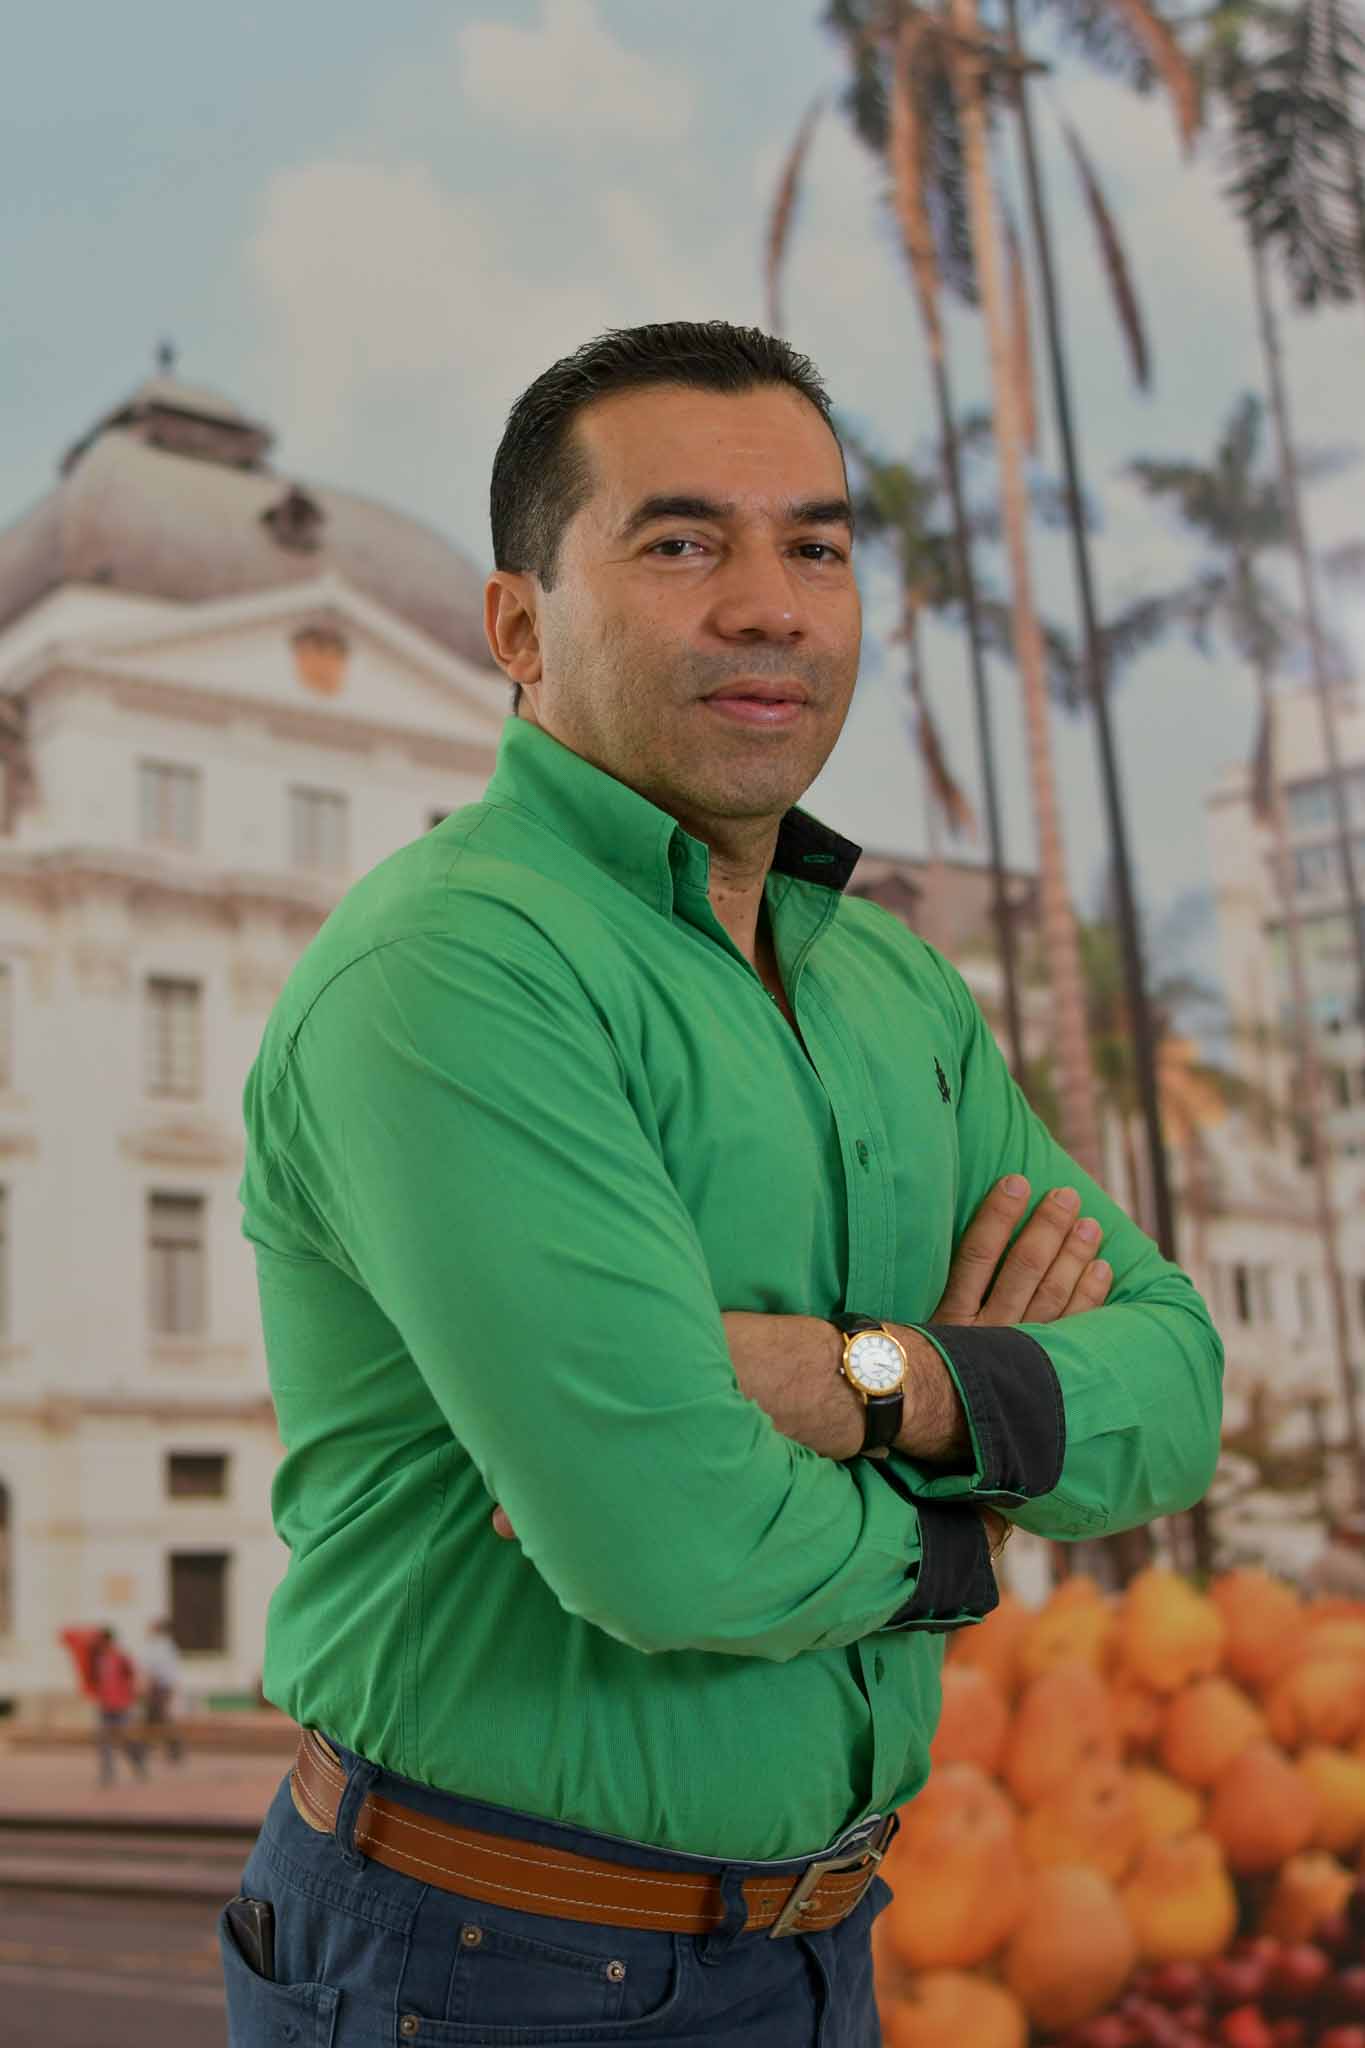 Foto de Mauricio Martínez Arango, Profesional Especializado de oficina de gestión contractual. Se encuentra de frente y sonriendo.